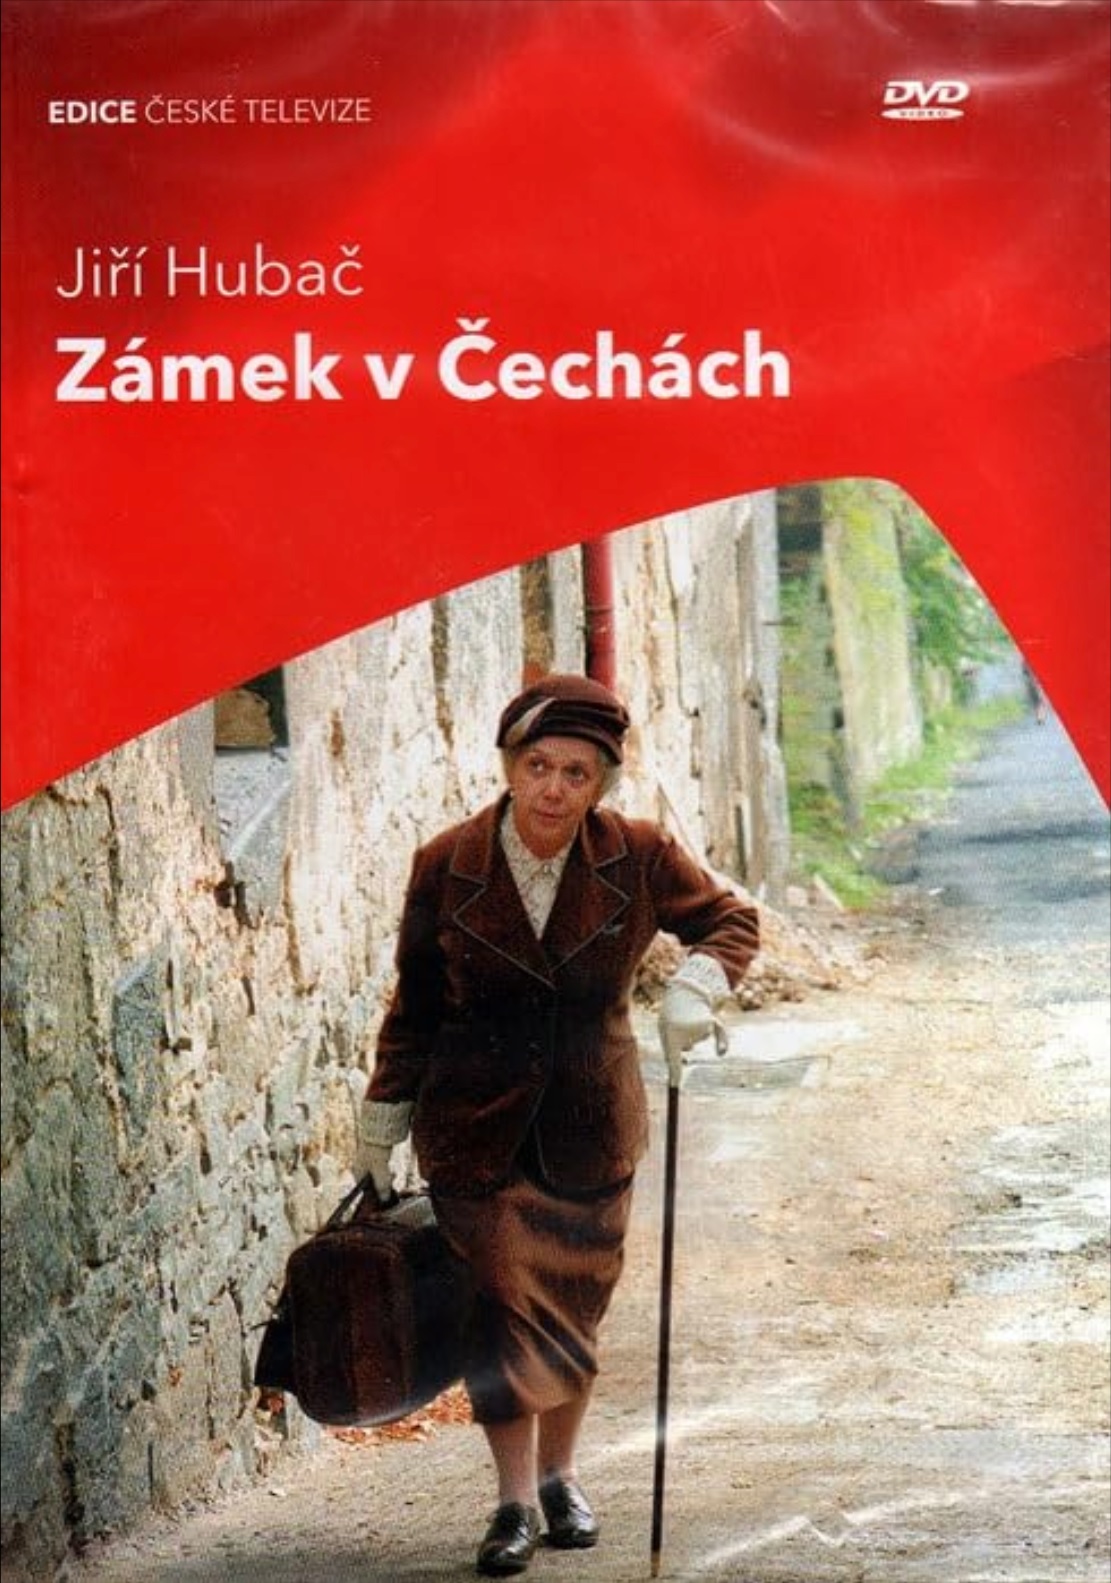 Plakát pro film “Zámek v Čechách”